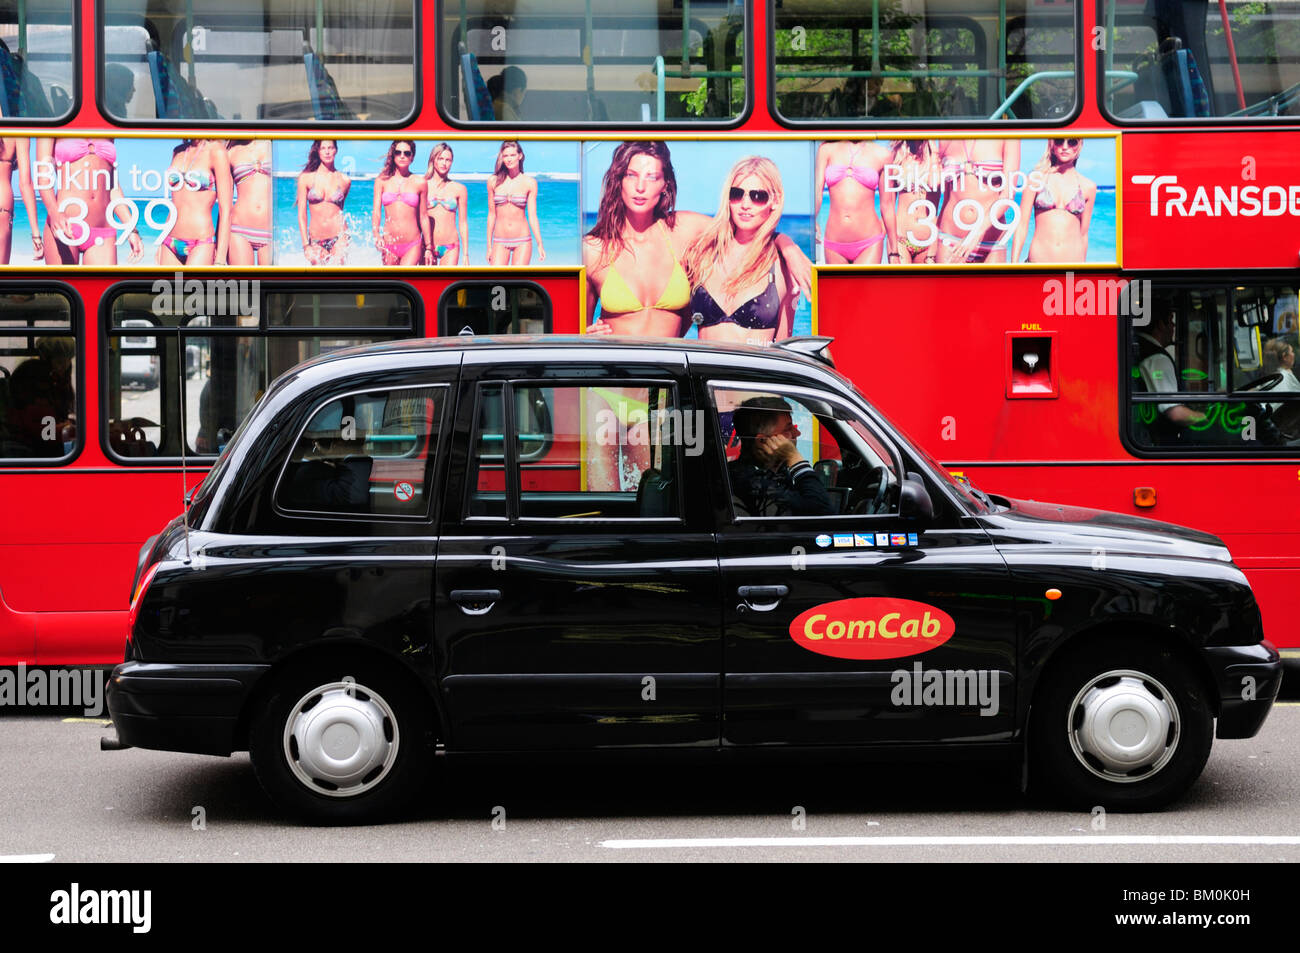 ComCab London Taxi et Bus Rouge avec H&M publicité Bikini, Oxford Street, London, England, UK Banque D'Images